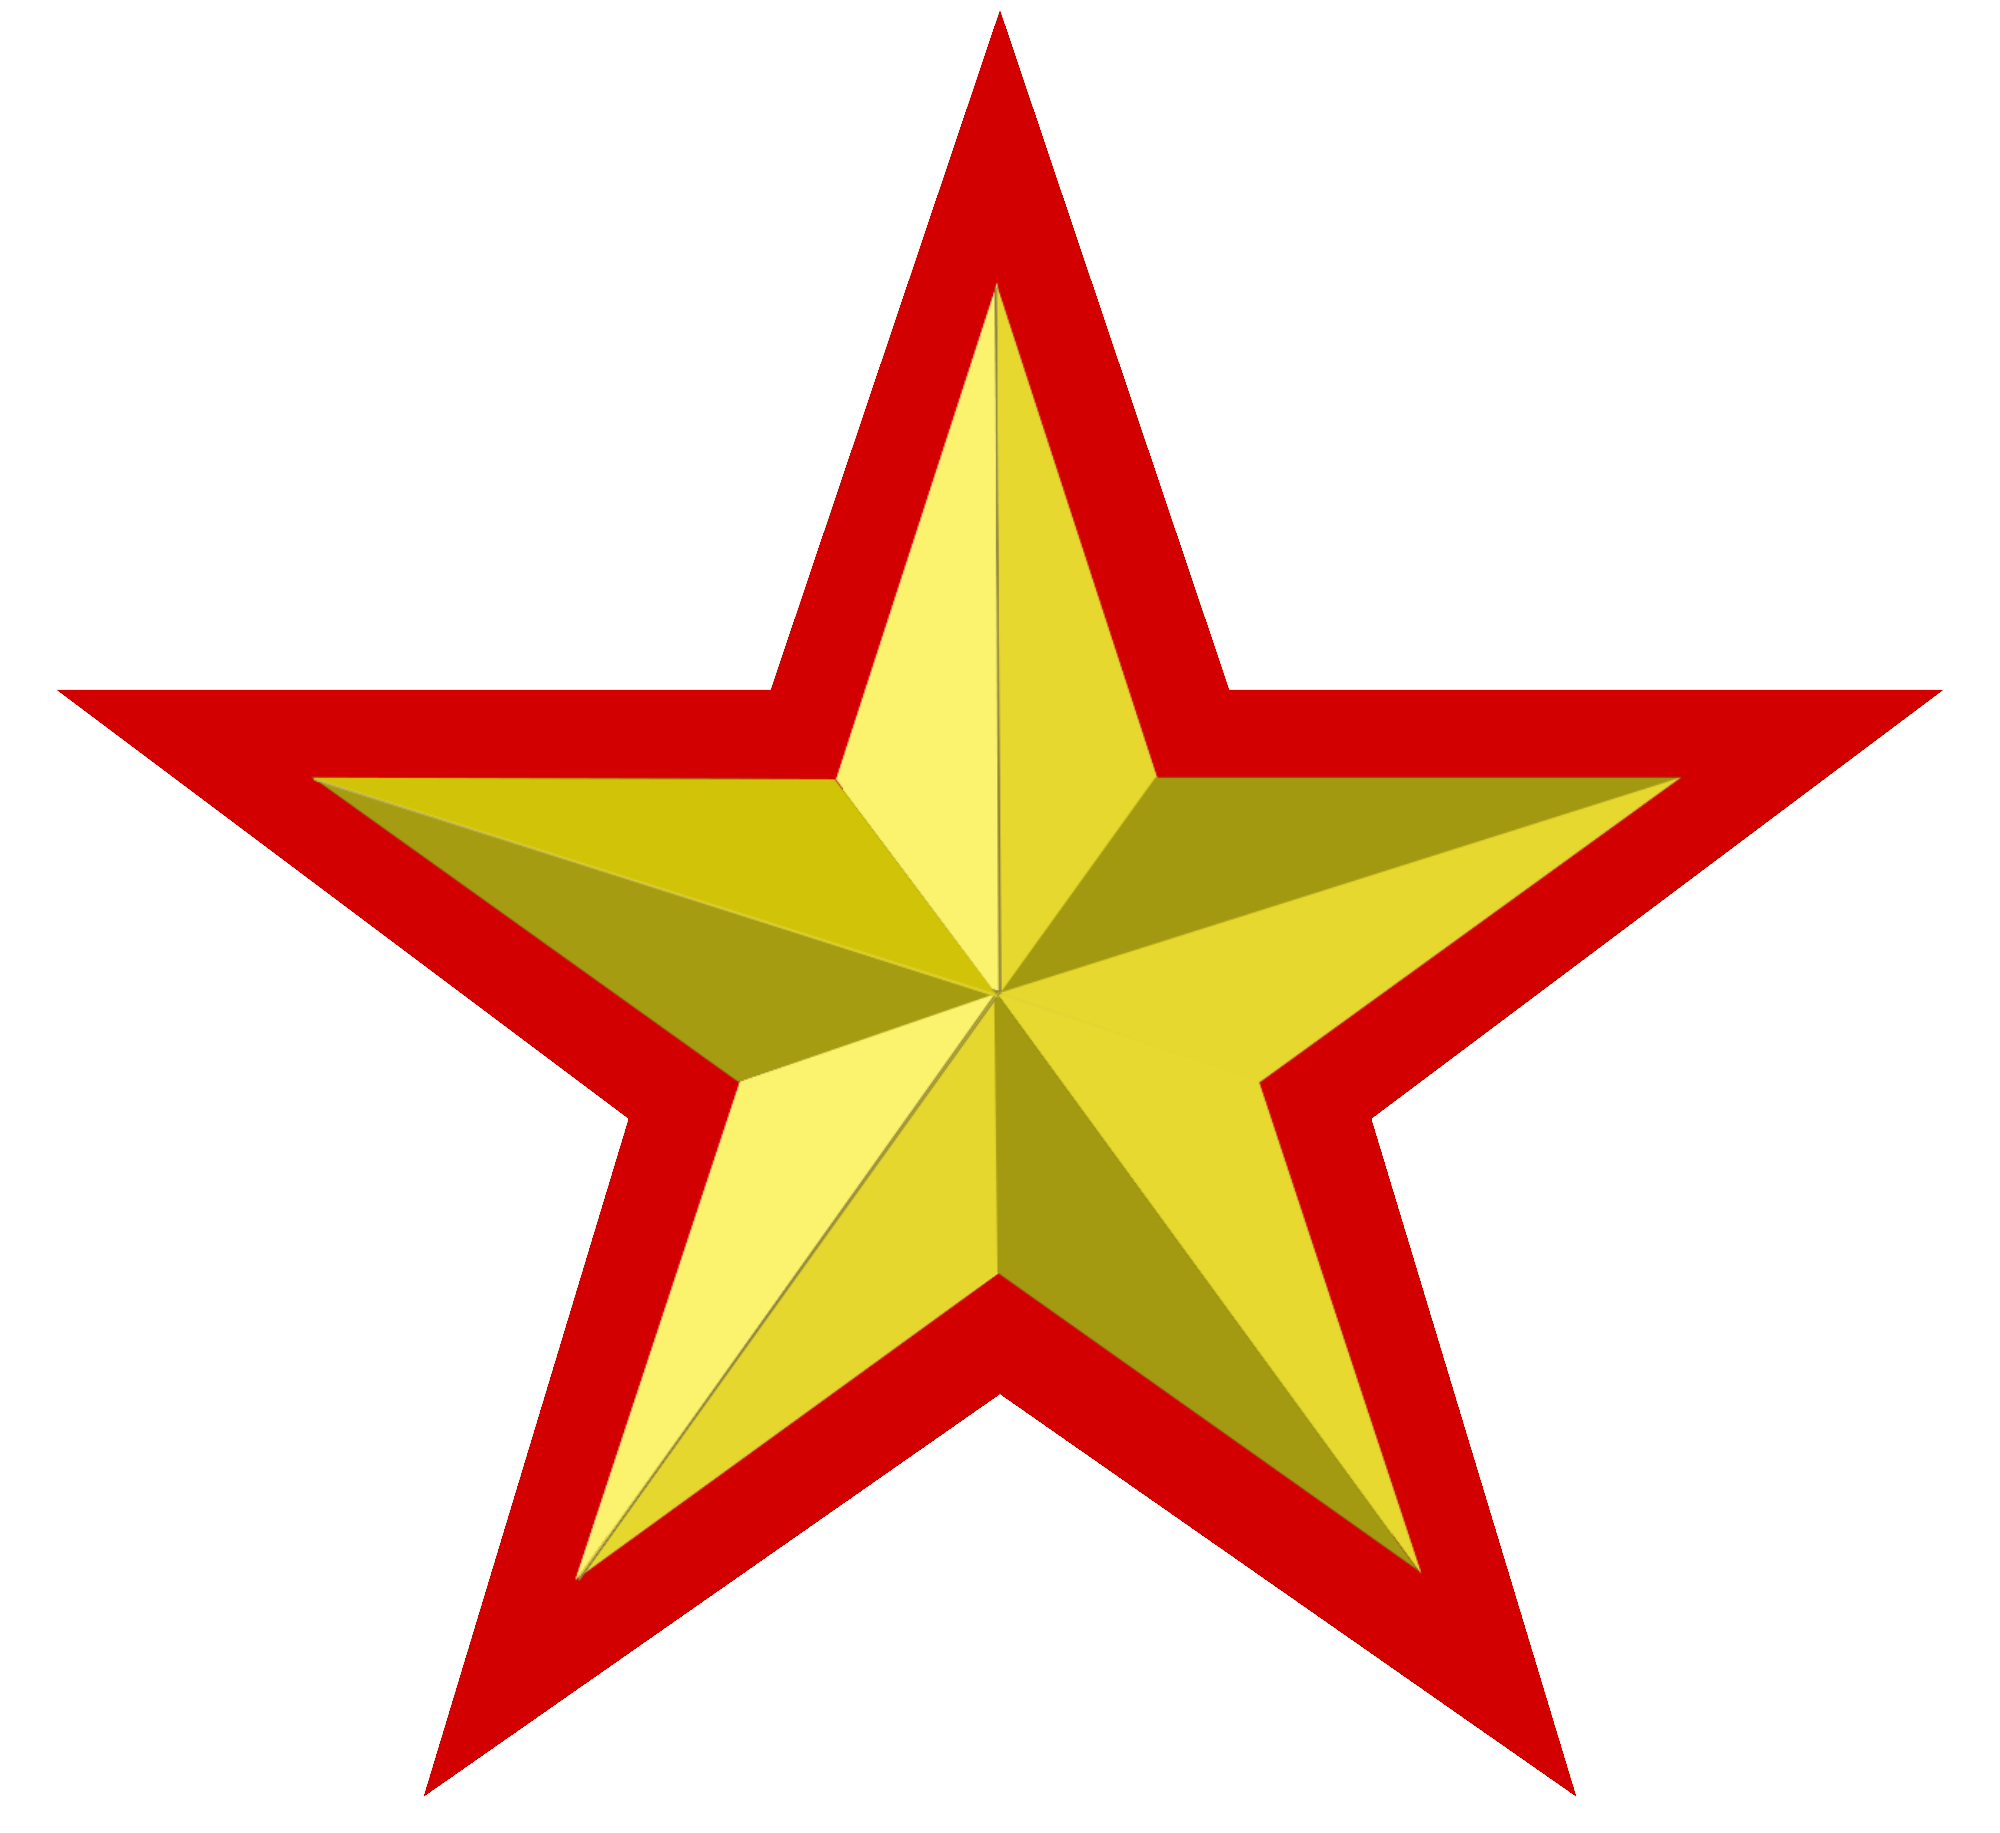 Drapeau soviétique